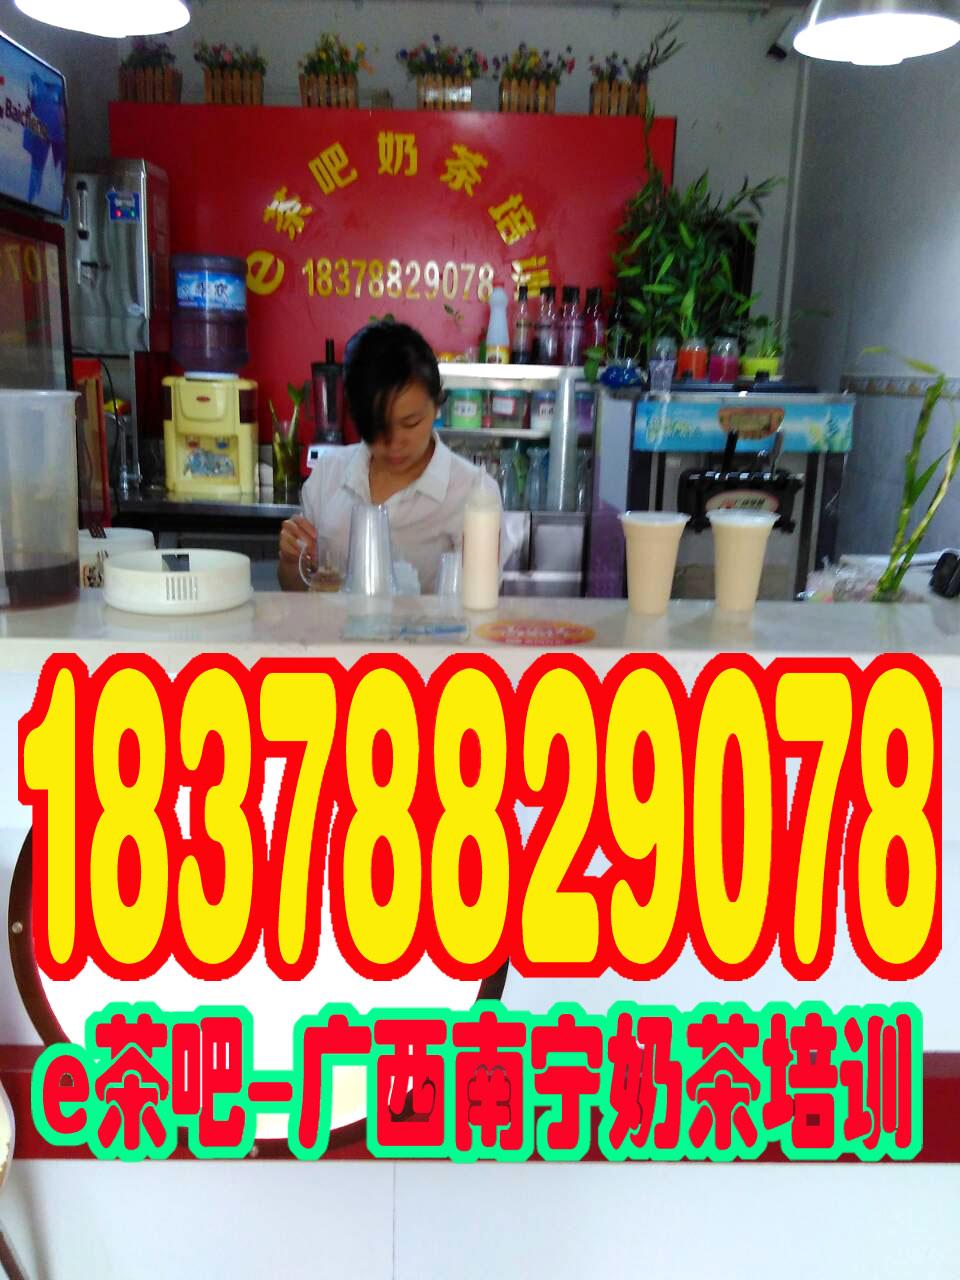 广西贵港奶茶技术培训学校培训照片/贵港奶茶培训班课